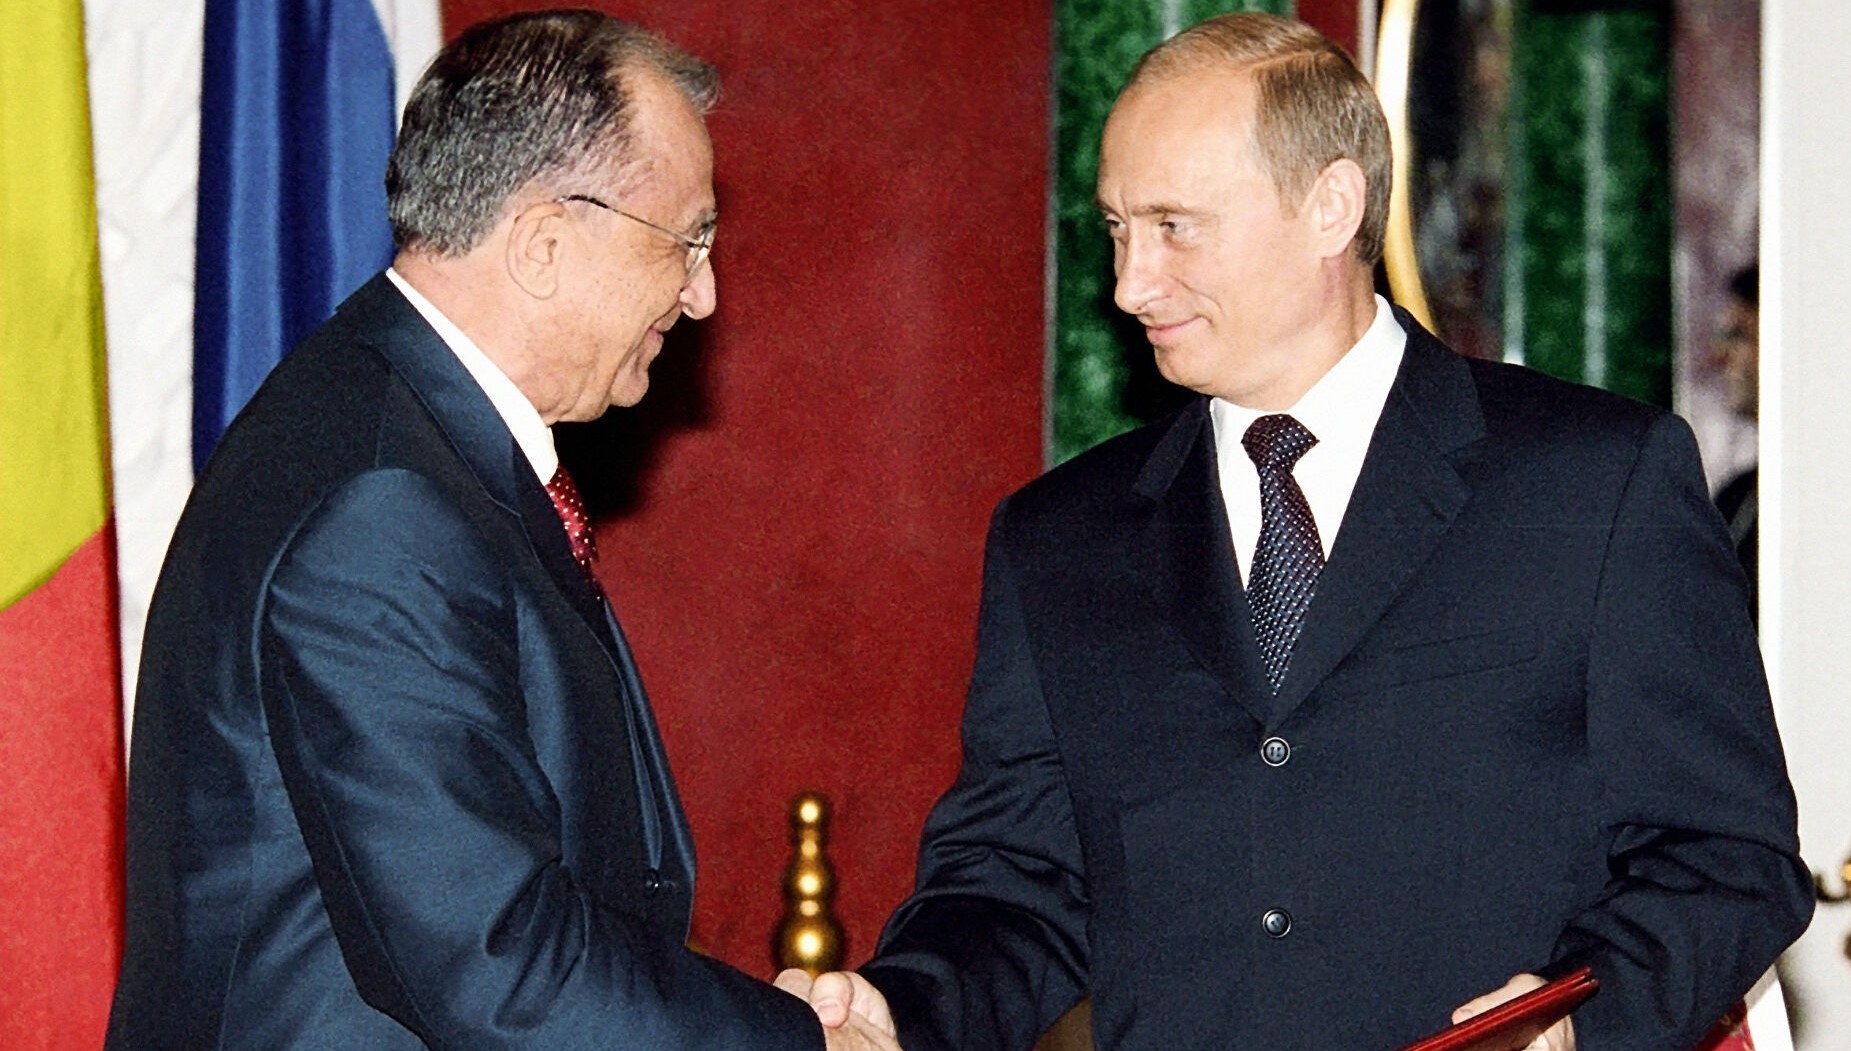 Ce prevede tratatul semnat între România și Rusia în 2003? Actul a fost semnat de Ion Iliescu și Vladimir Putin